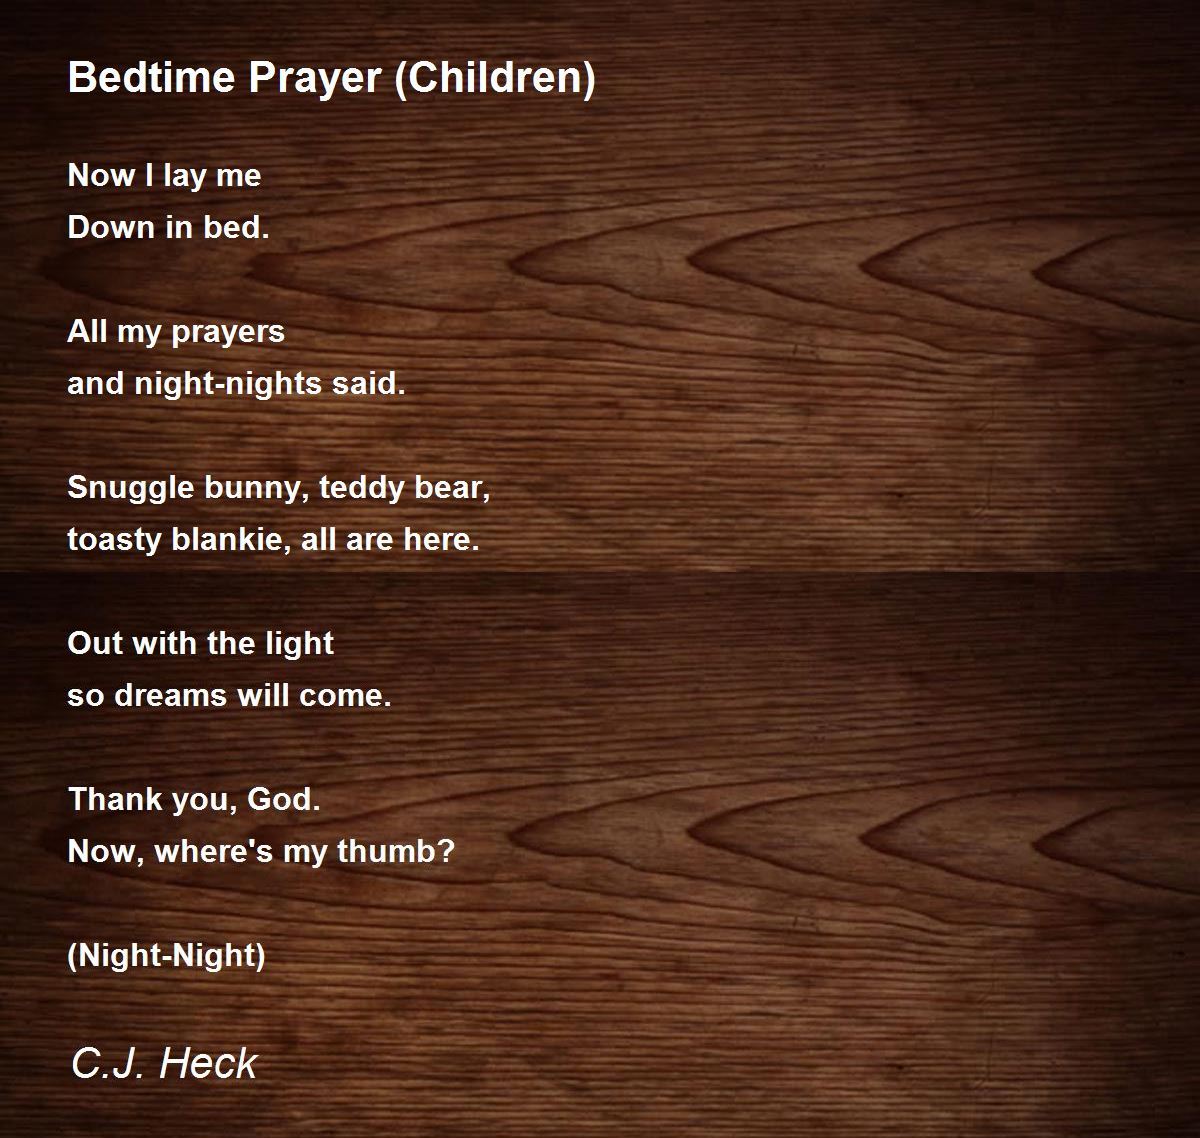 Bedtime prayer